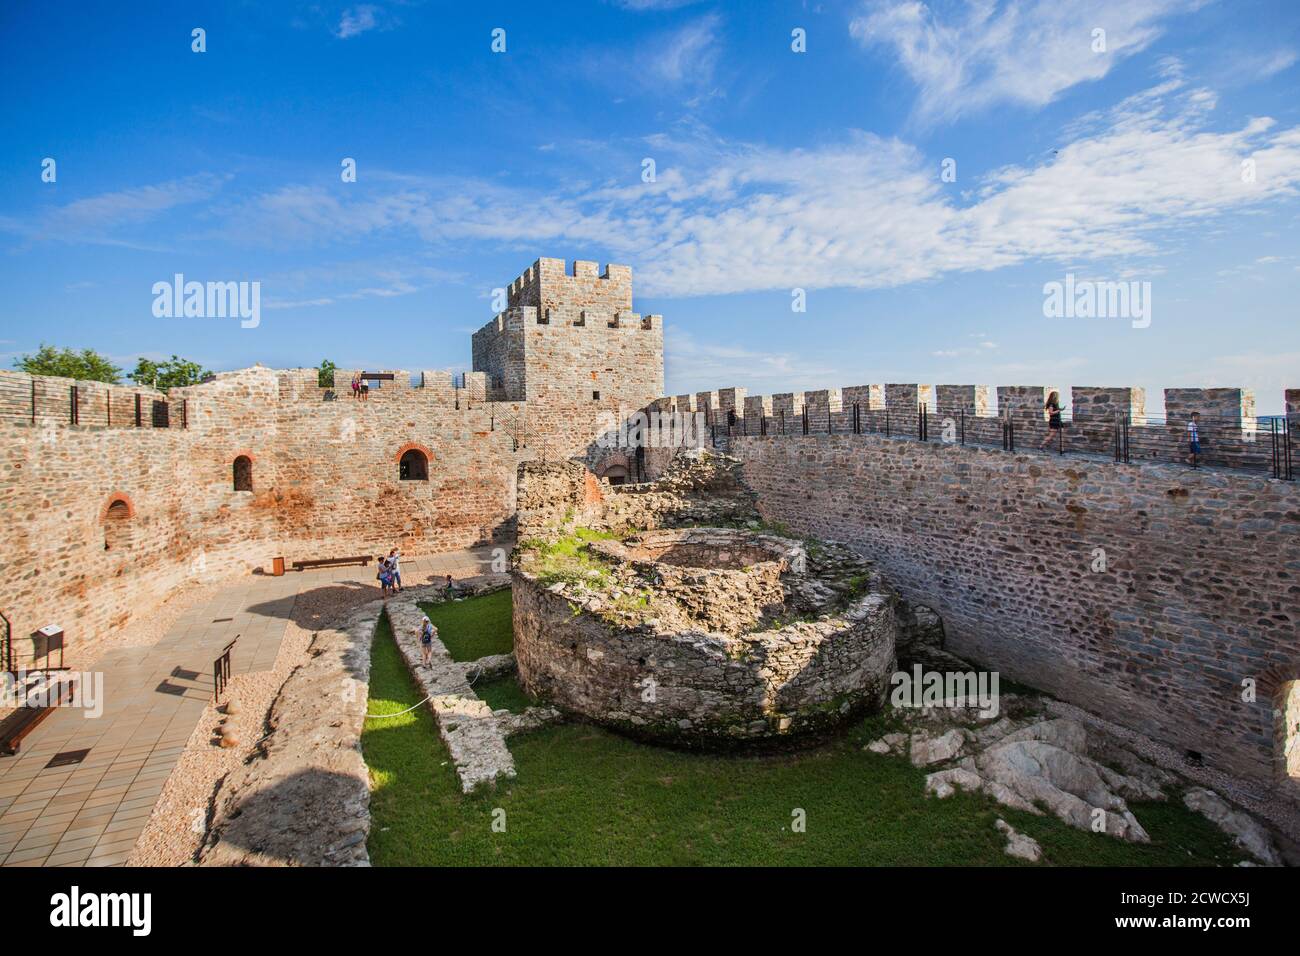 Patrimonio culturale, fortezza medievale di RAM, vecchia fortezza ottomana, fortificazione di confine situato sulle rive del Danubio, Serbia orientale, Europa Foto Stock